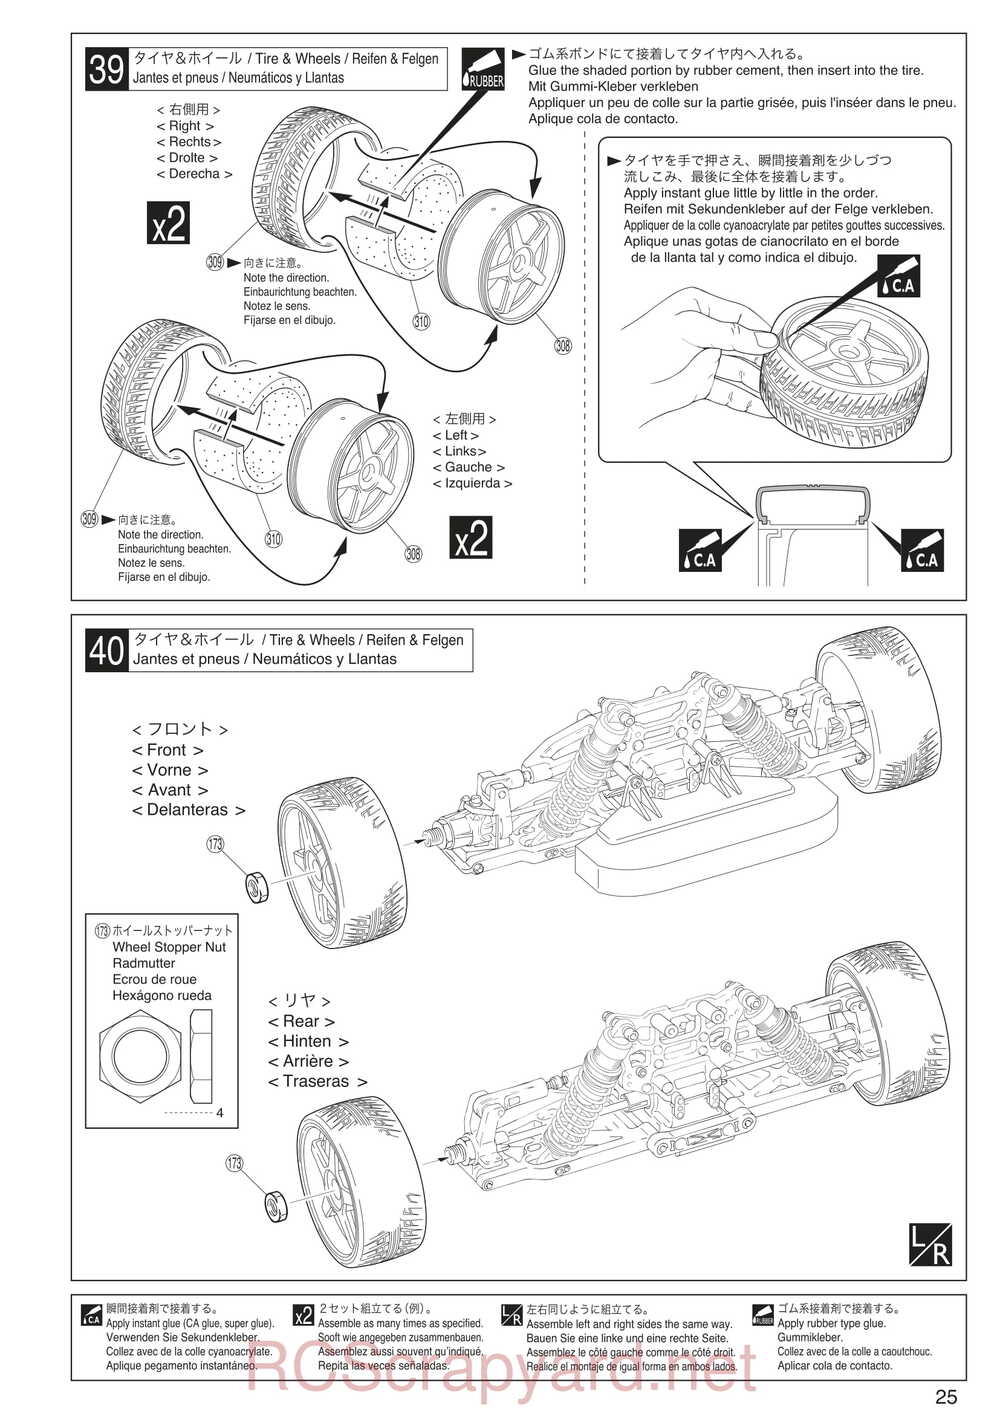 Kyosho - 30935 - Inferno GT2 VE Race-Spec - Manual - Page 25